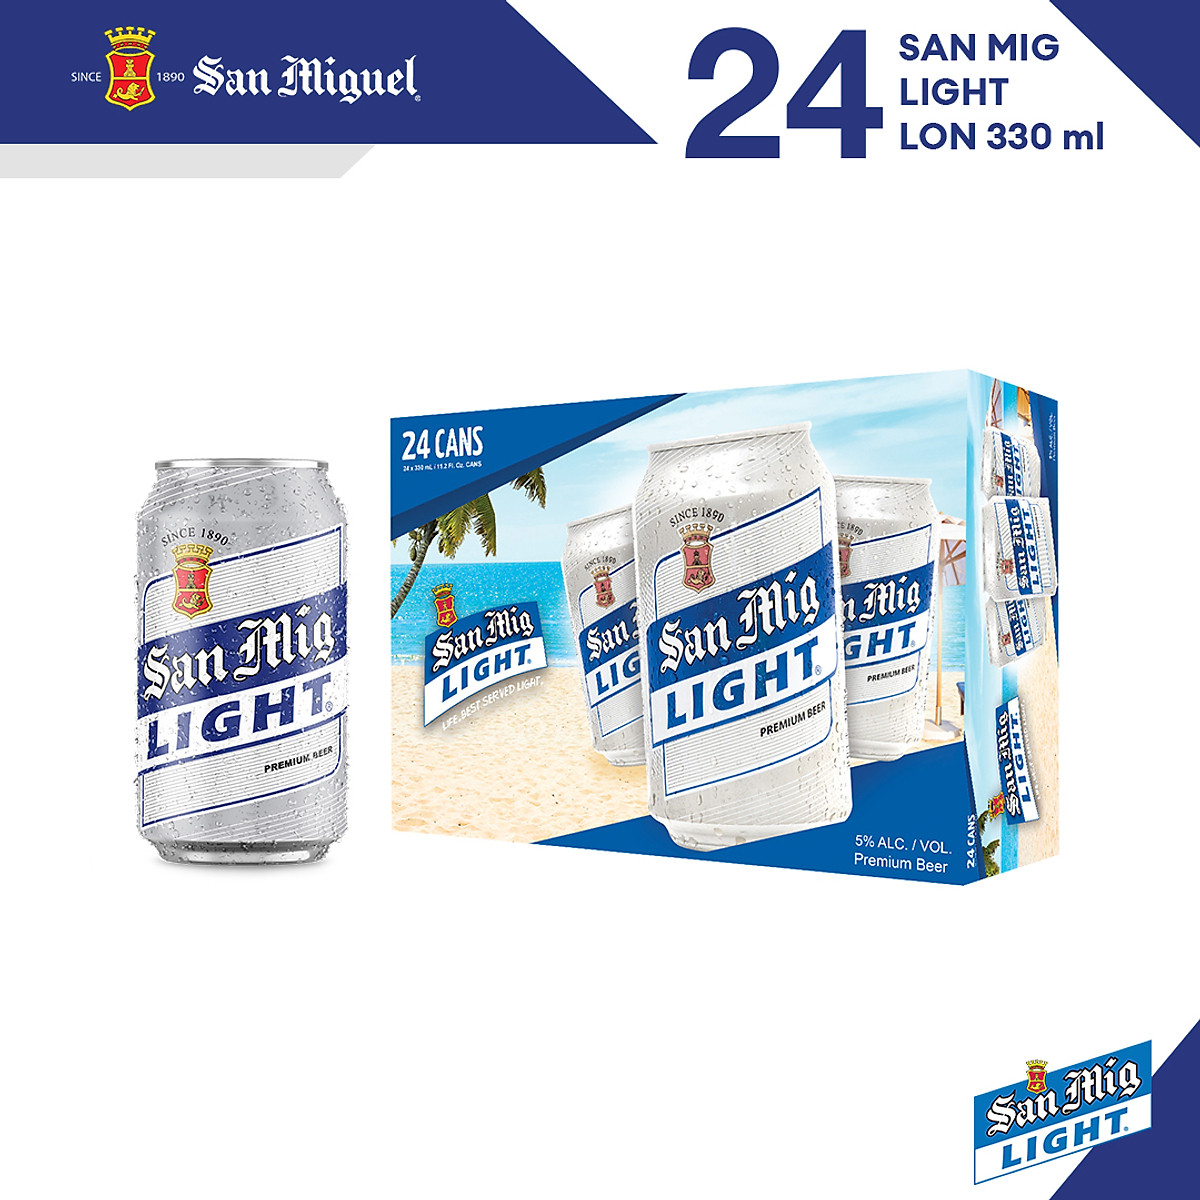 Bia San Miguel Light: Bia San Miguel Light là một loại bia tuyệt vời, có hương vị tươi mát, nhẹ nhàng và thơm ngon. Xem hình này để cảm nhận được những giây phút thư giãn và tận hưởng hương vị đặc biệt của San Miguel Light!